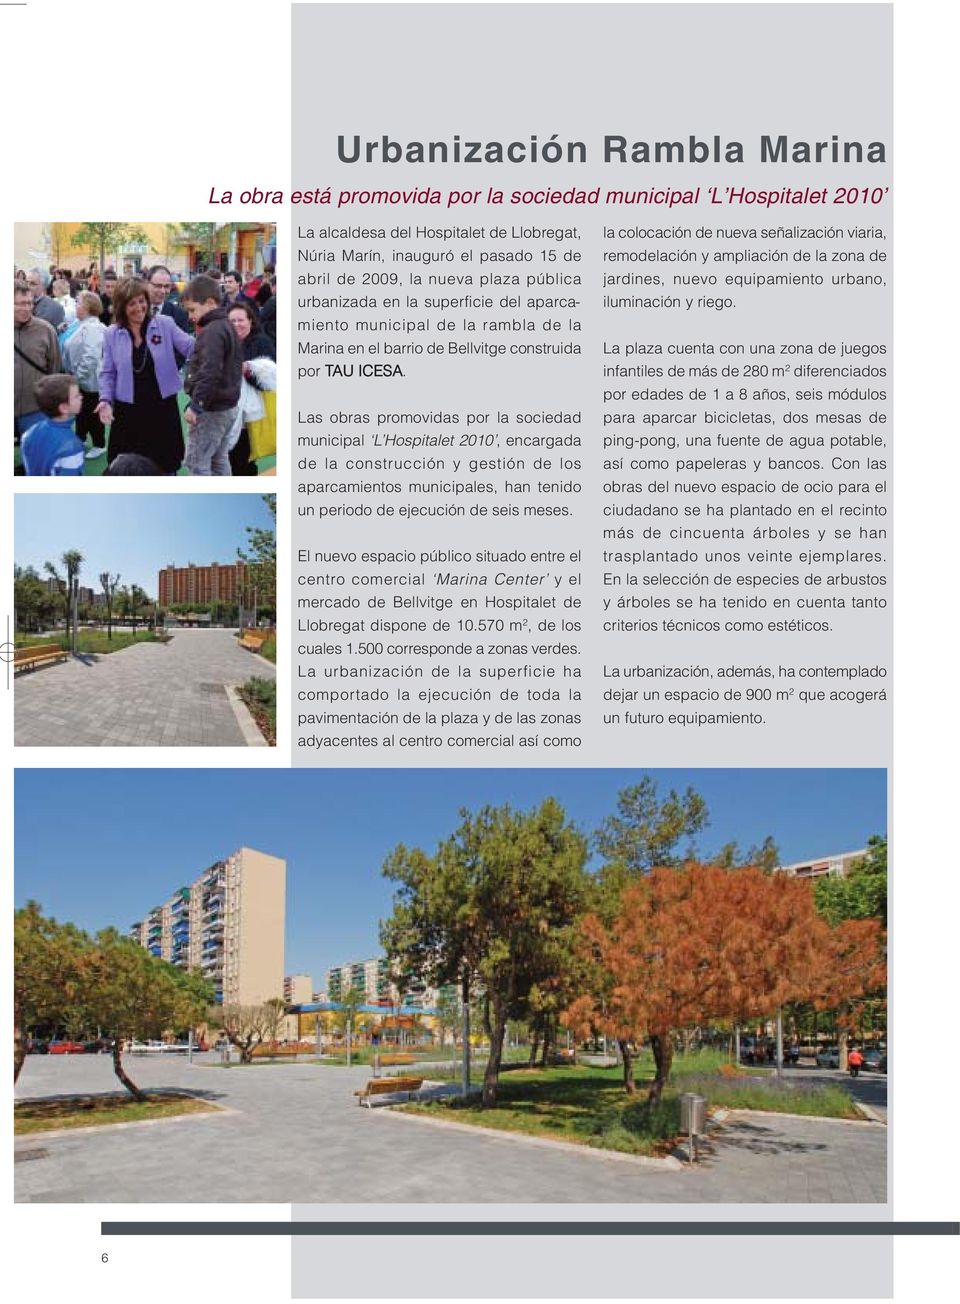 Las obras promovidas por la sociedad municipal L Hospitalet 2010, encargada de la construcción y gestión de los aparcamientos municipales, han tenido un periodo de ejecución de seis meses.